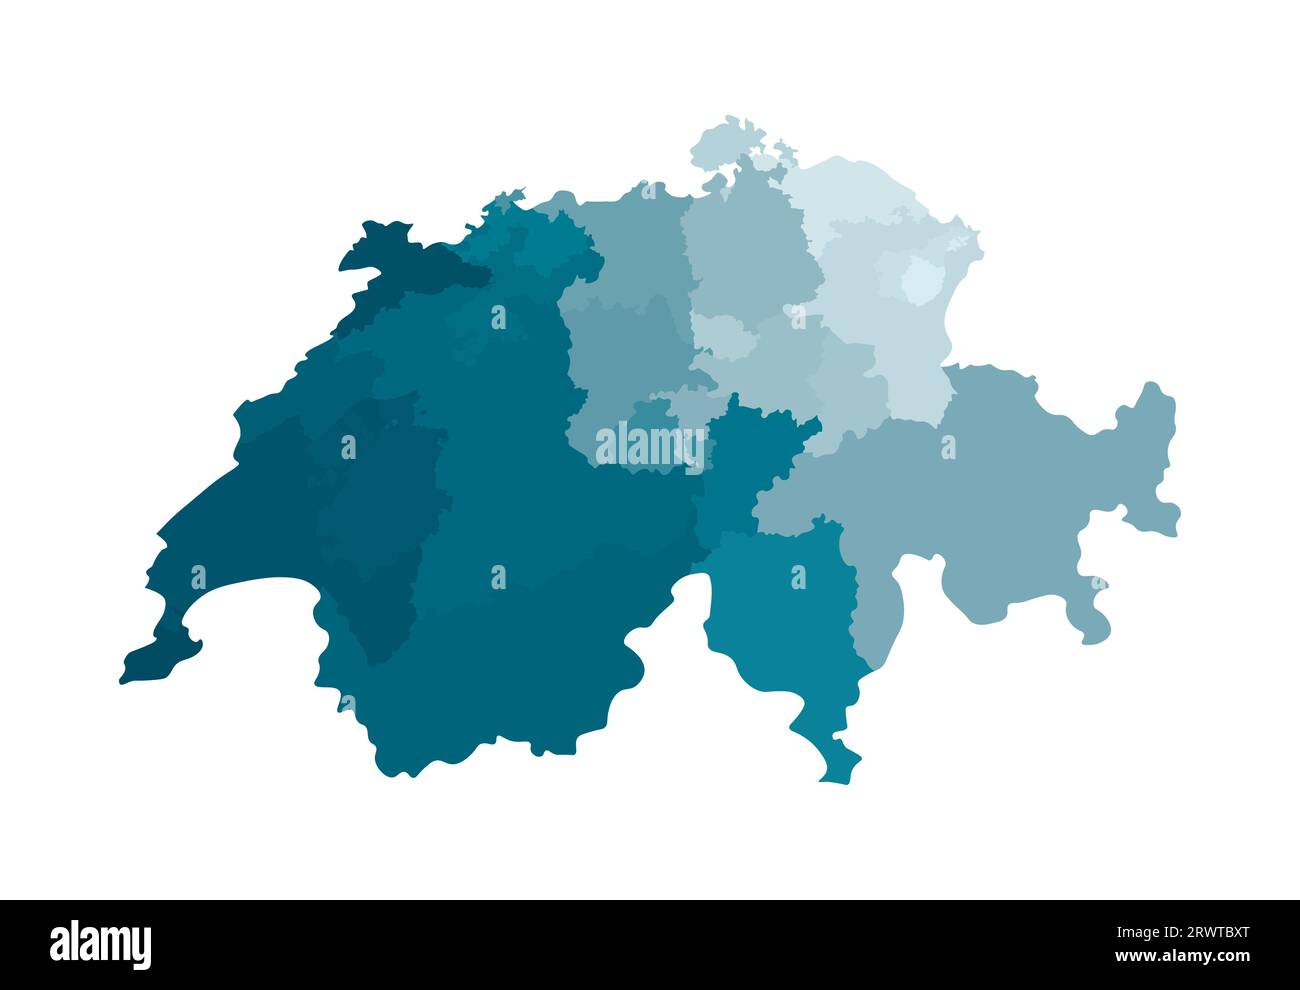 Illustrazione vettoriale isolata della mappa amministrativa semplificata della Svizzera. Confini delle regioni. Sagome kaki blu colorato. Illustrazione Vettoriale